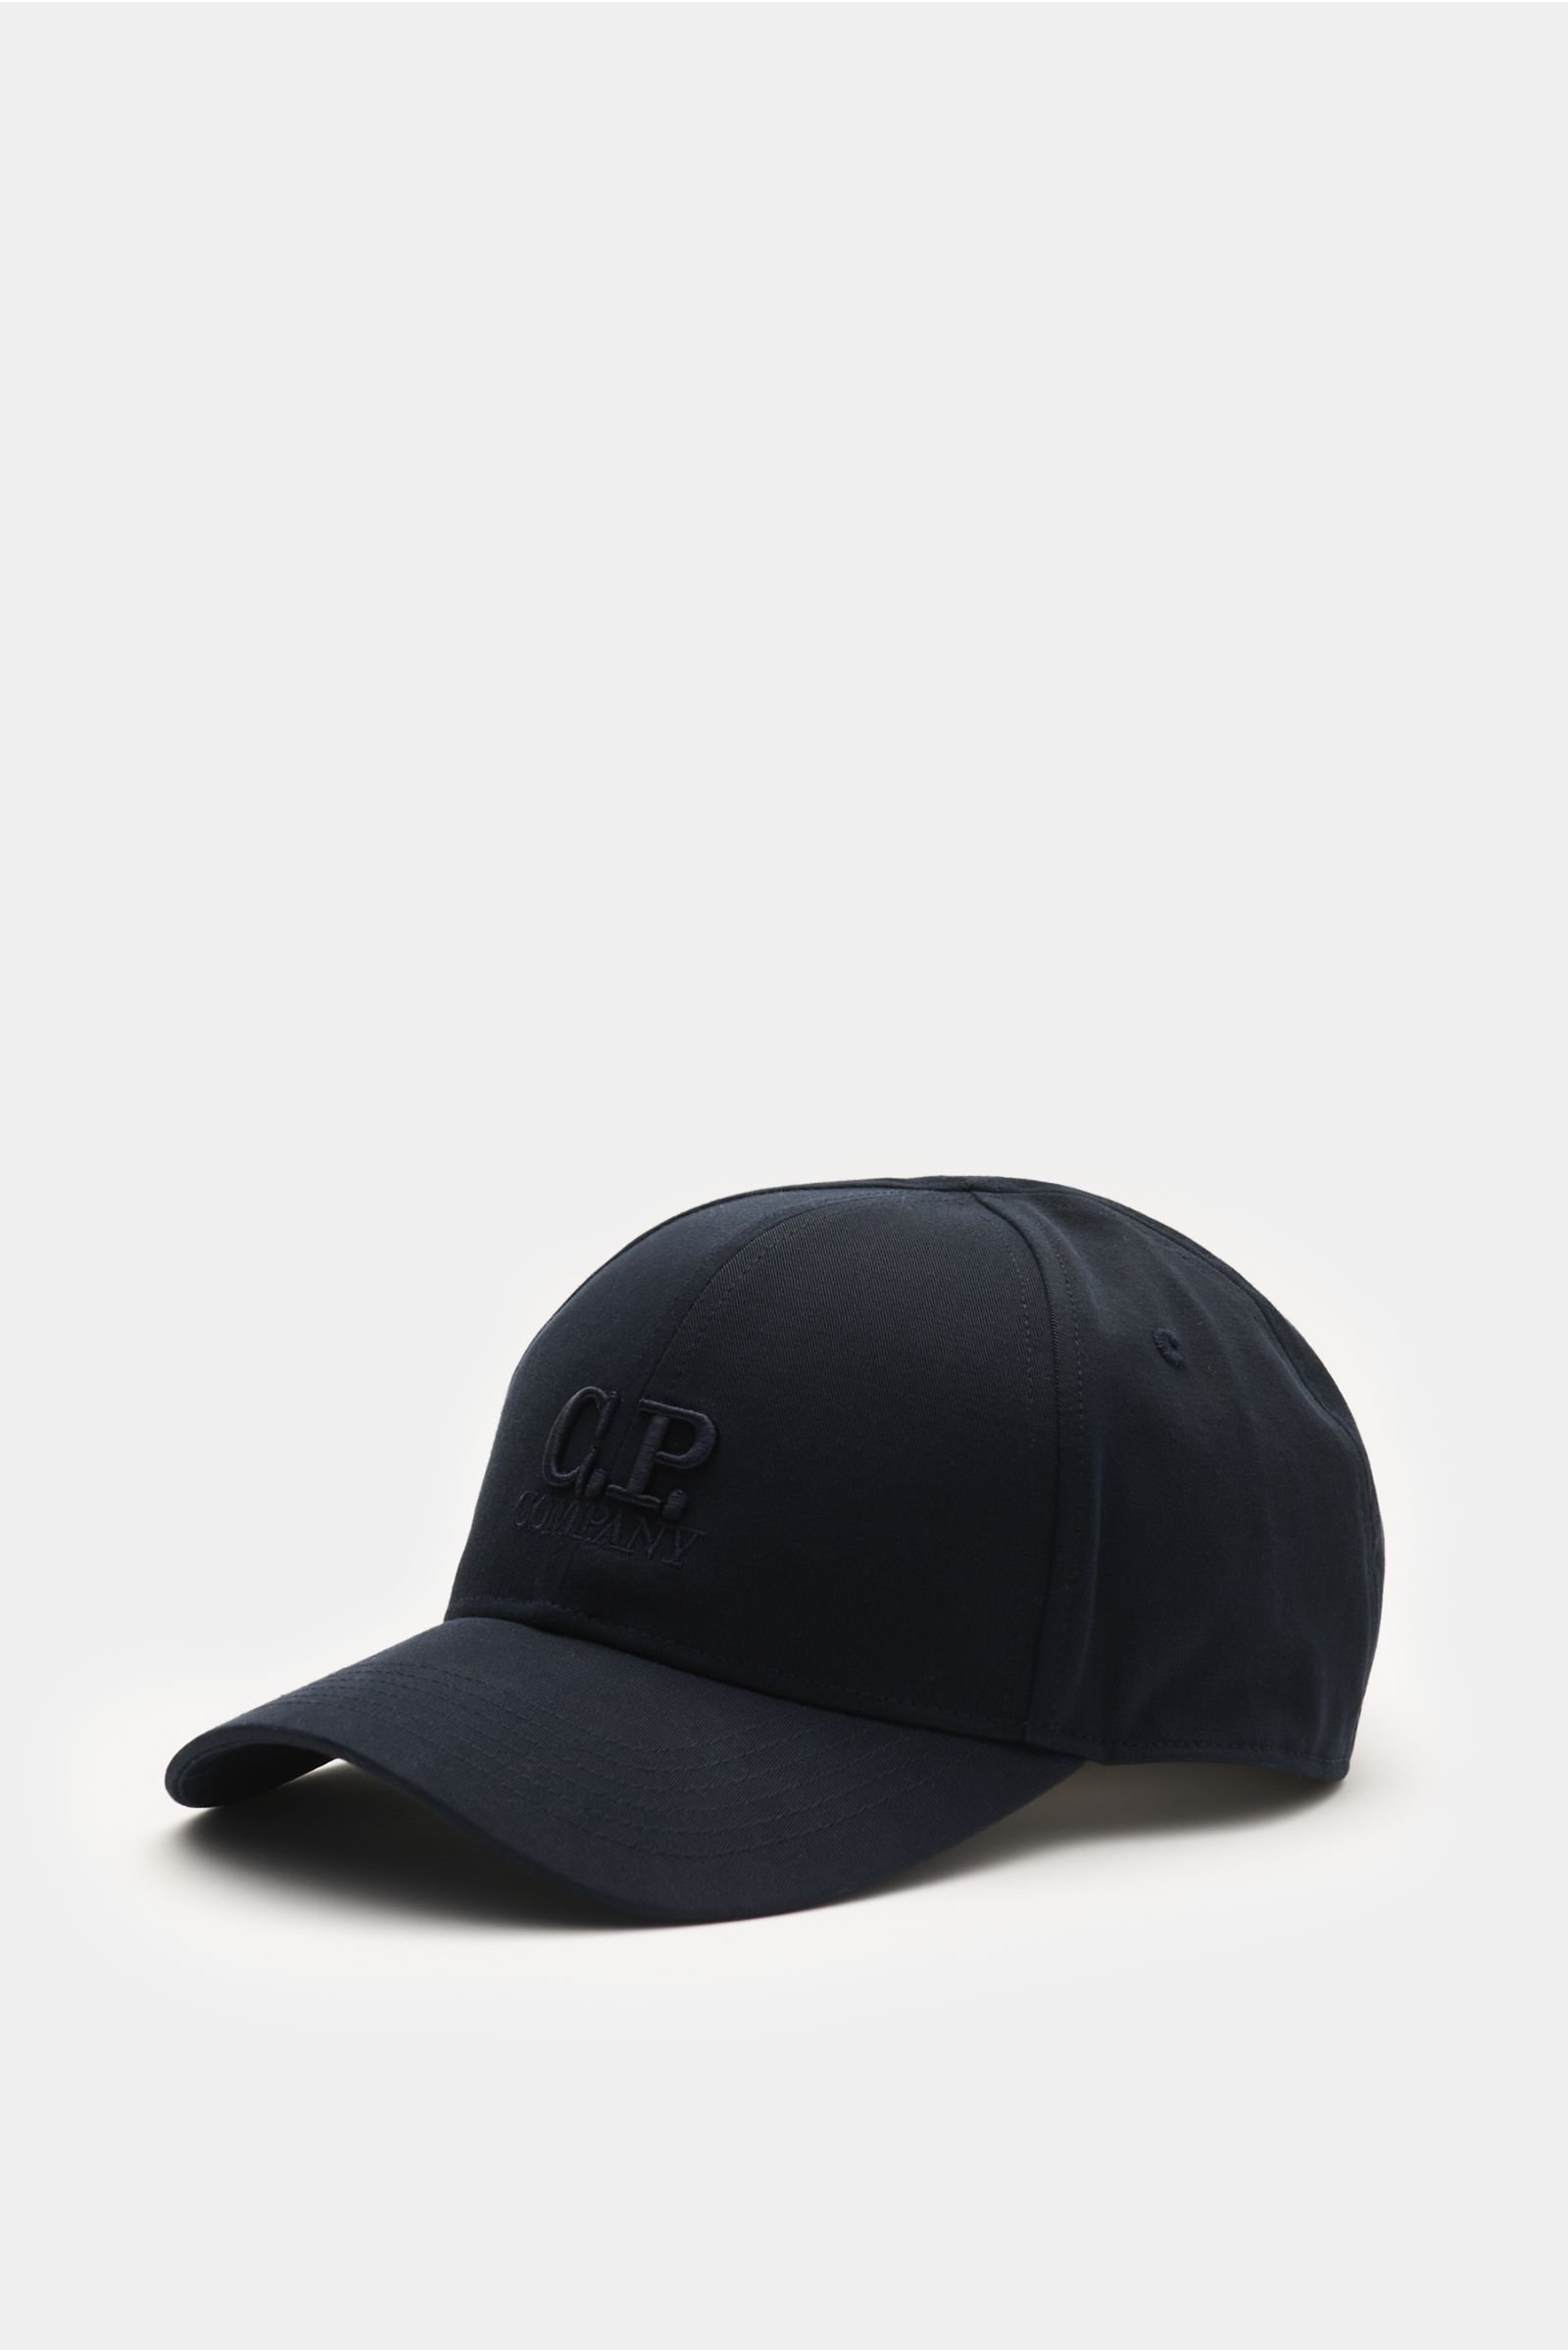 Baseball cap dark navy